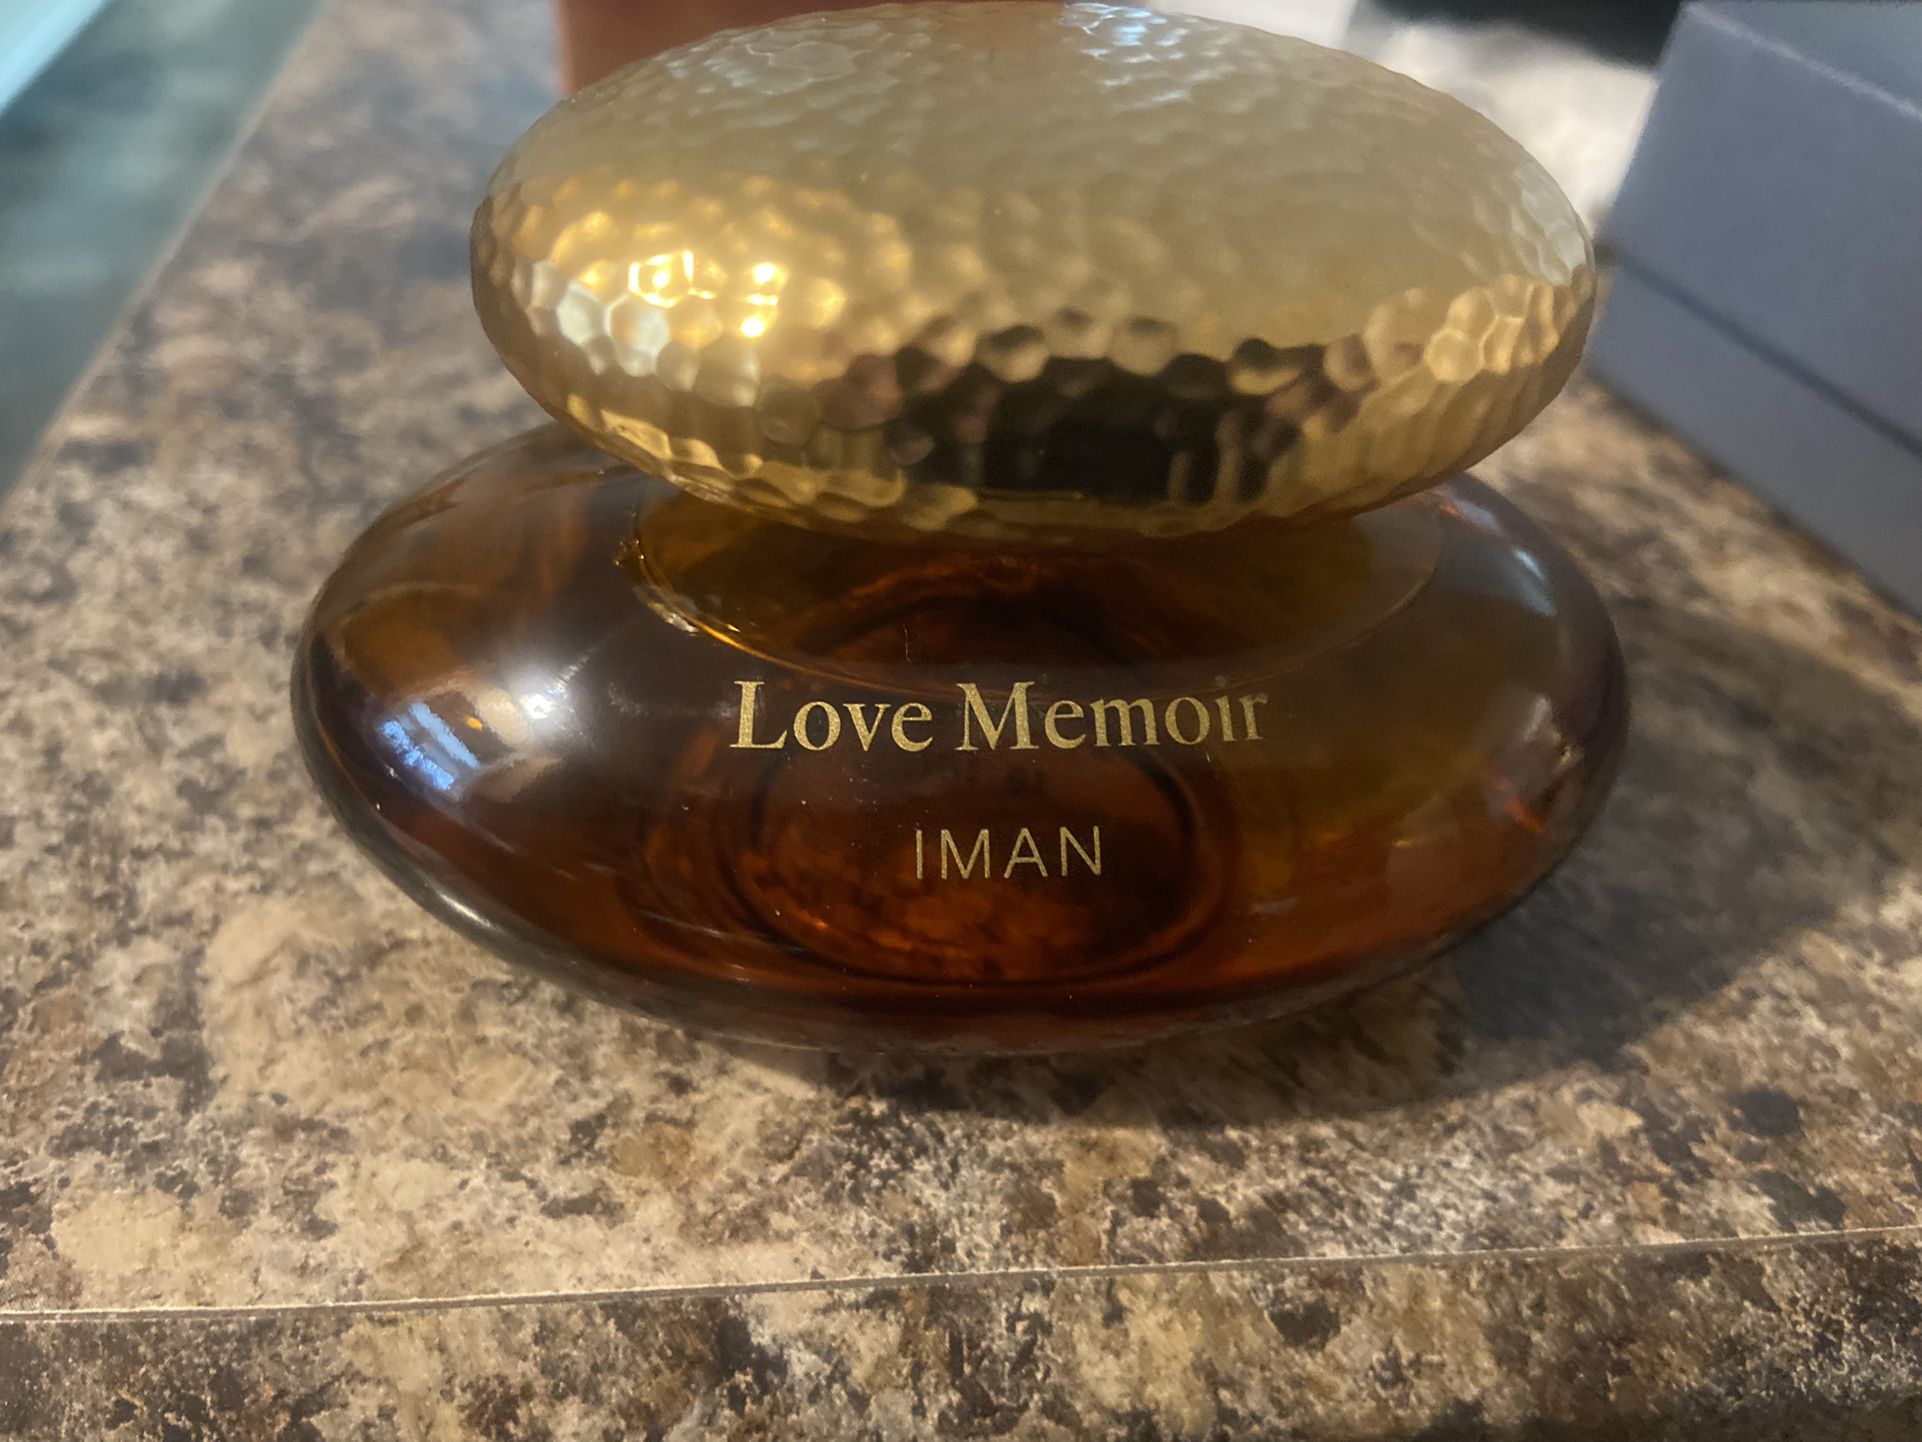 Love Memoir IMAN Women's Perfume